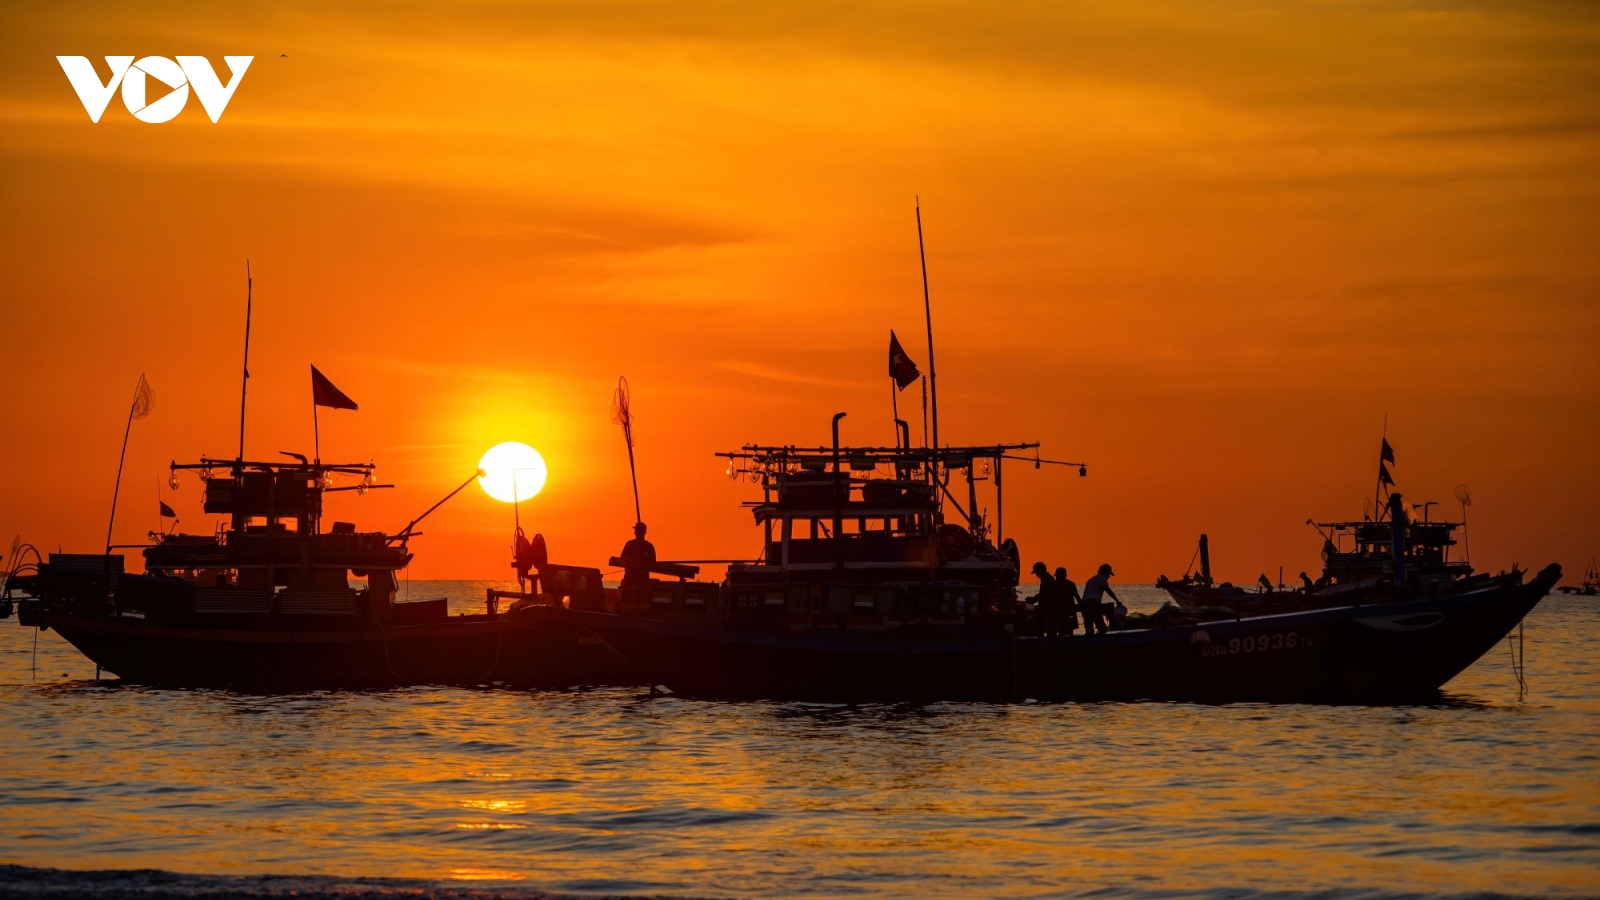 Bình minh nhộn nhịp trên bãi biển Mân Thái, Đà Nẵng